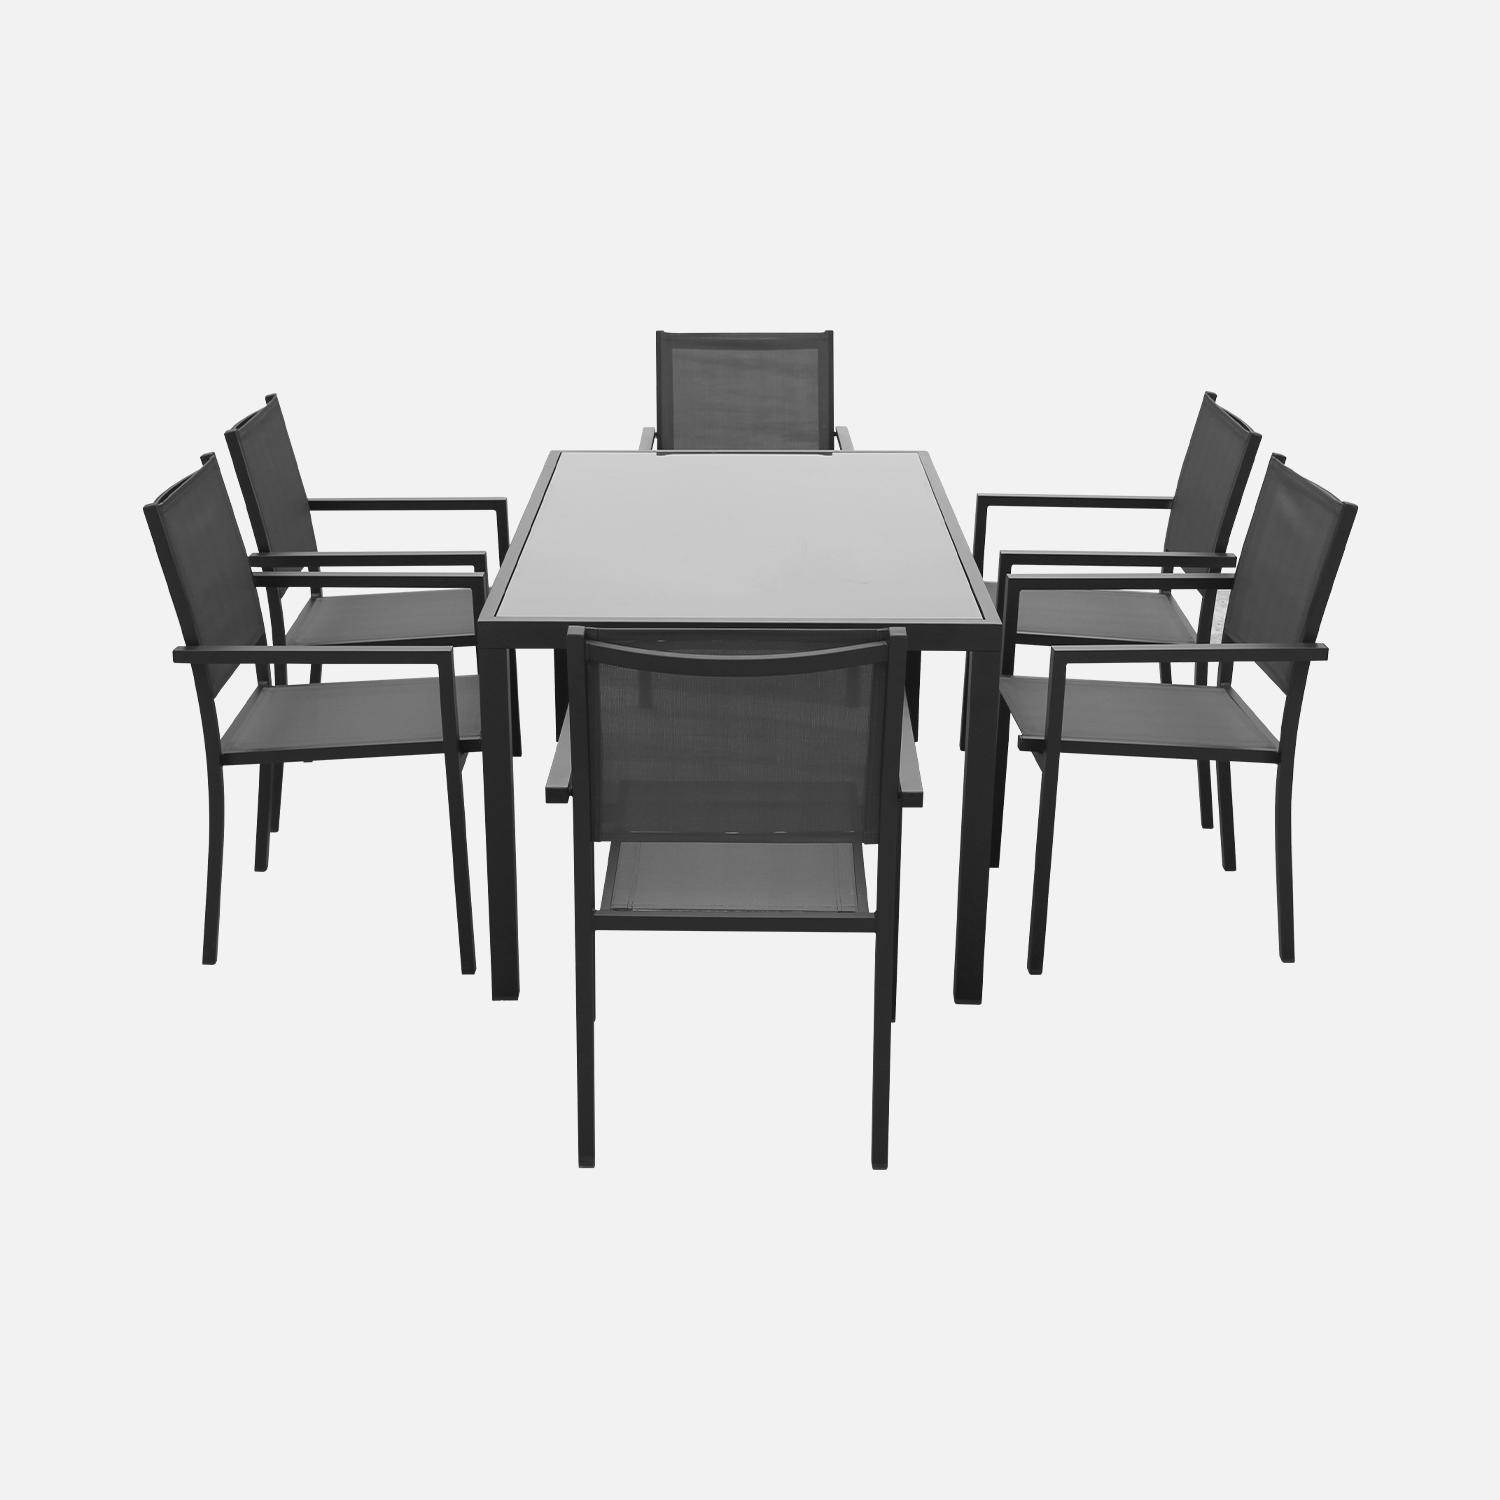 Salon de jardin en aluminium et textilène - Capua 180cm - Anthracite, gris - 8 places - 1 grande table rectangulaire, 8 fauteuils empilables Photo4